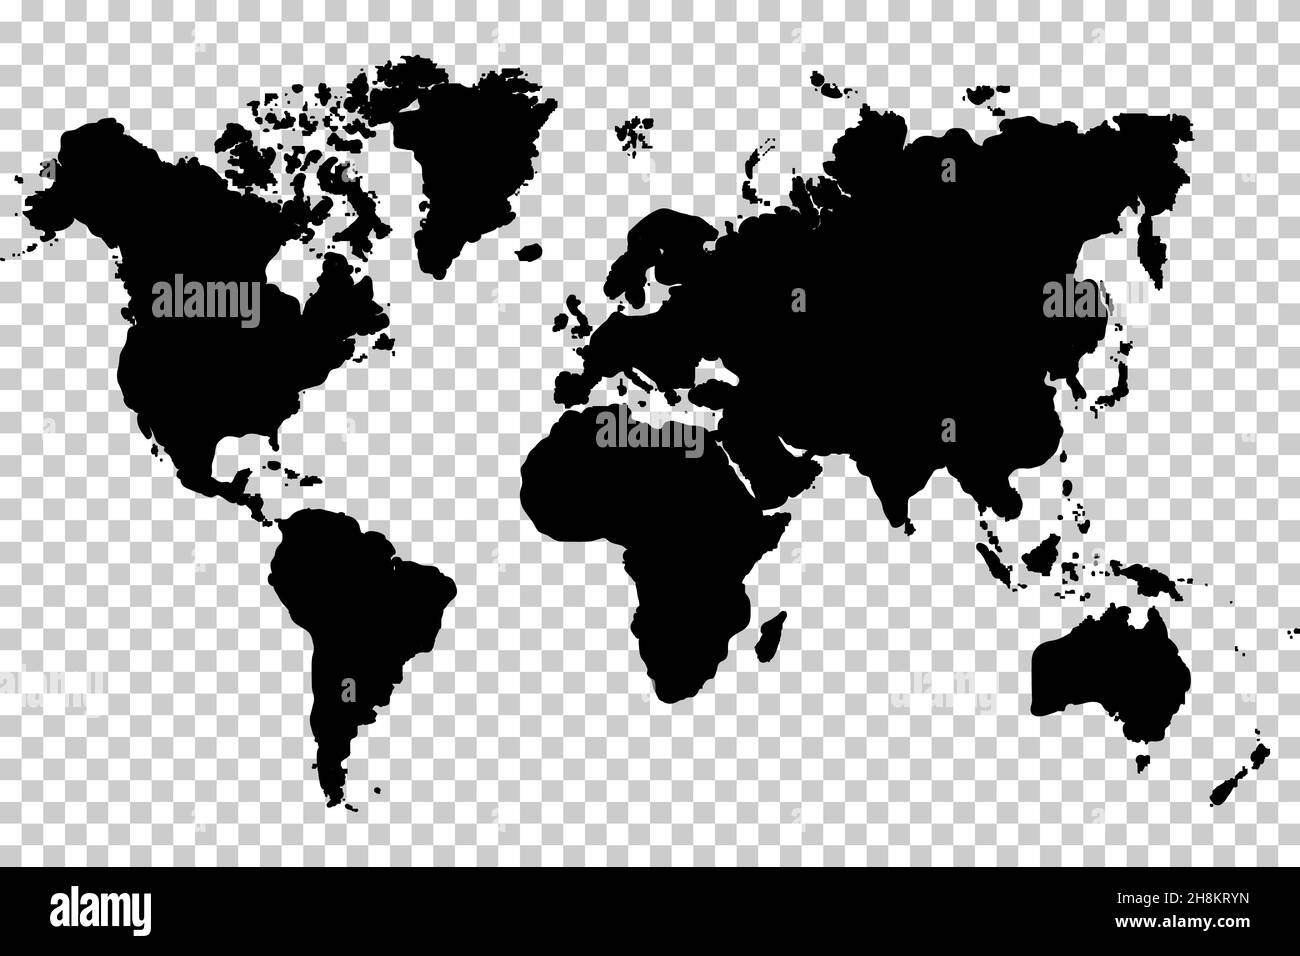 Weltkarte Vektor Illustration flache Design isoliert auf transparentem Hintergrund. Stock Vektor